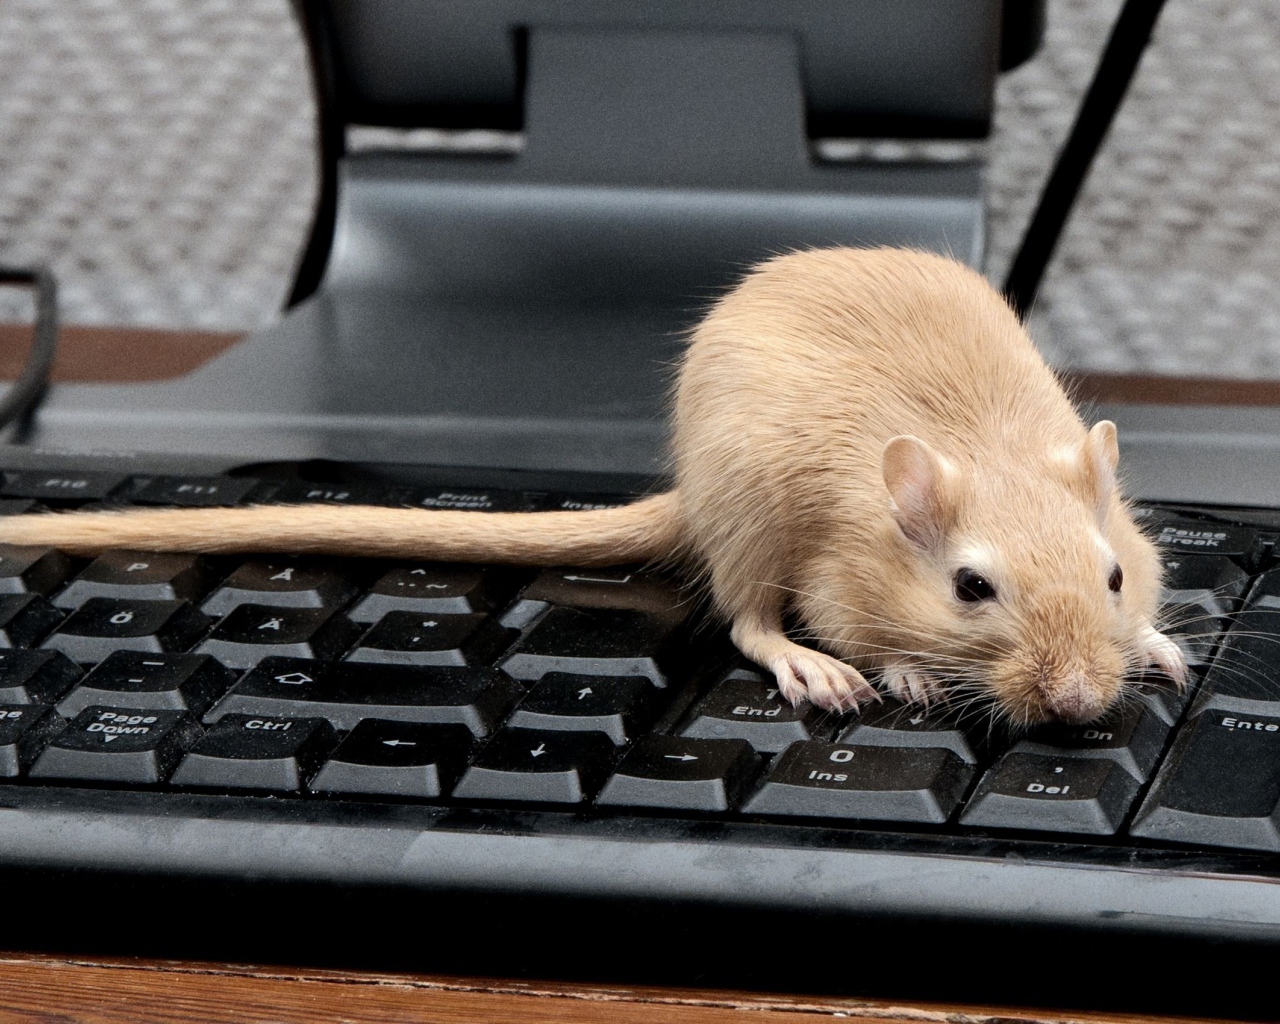 Рыжая крыса сидит на черной клавиатуре 